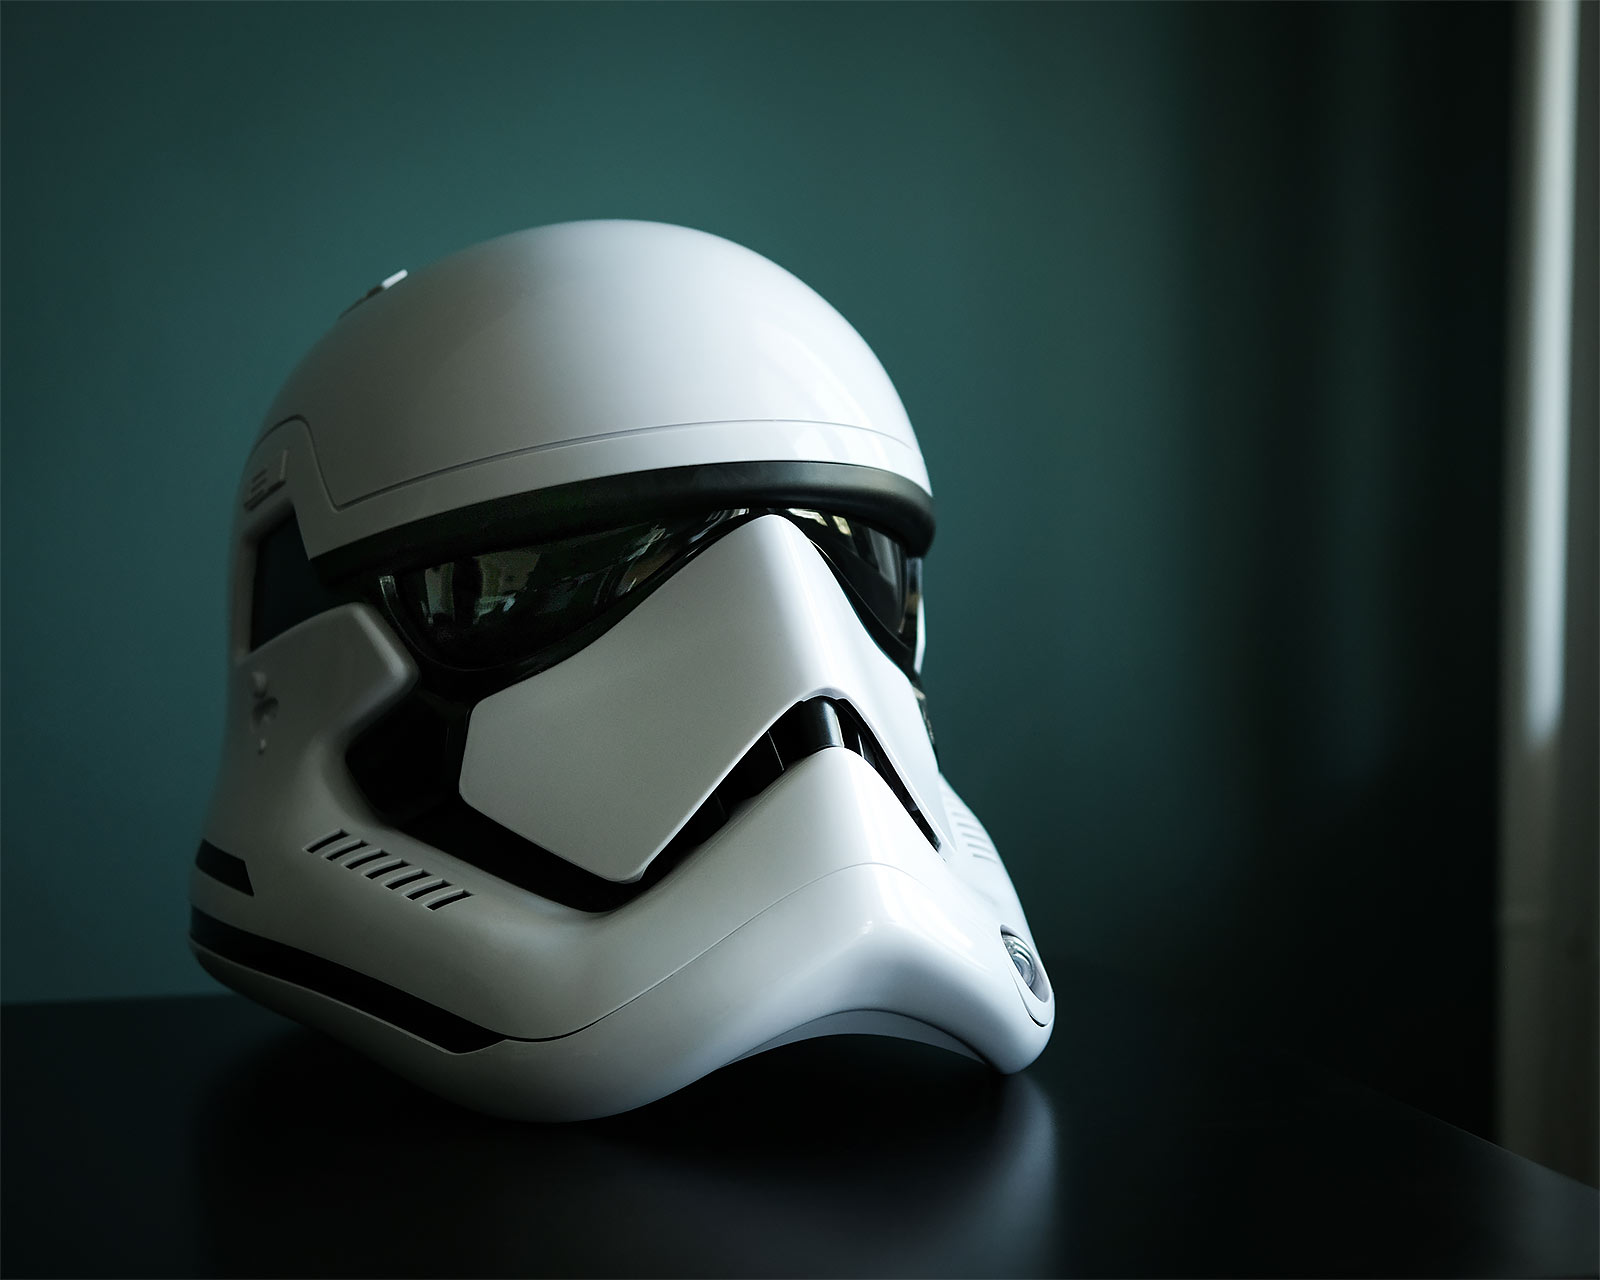 First Order Stormtrooper Helm Replica met Stemvervormer - Star Wars